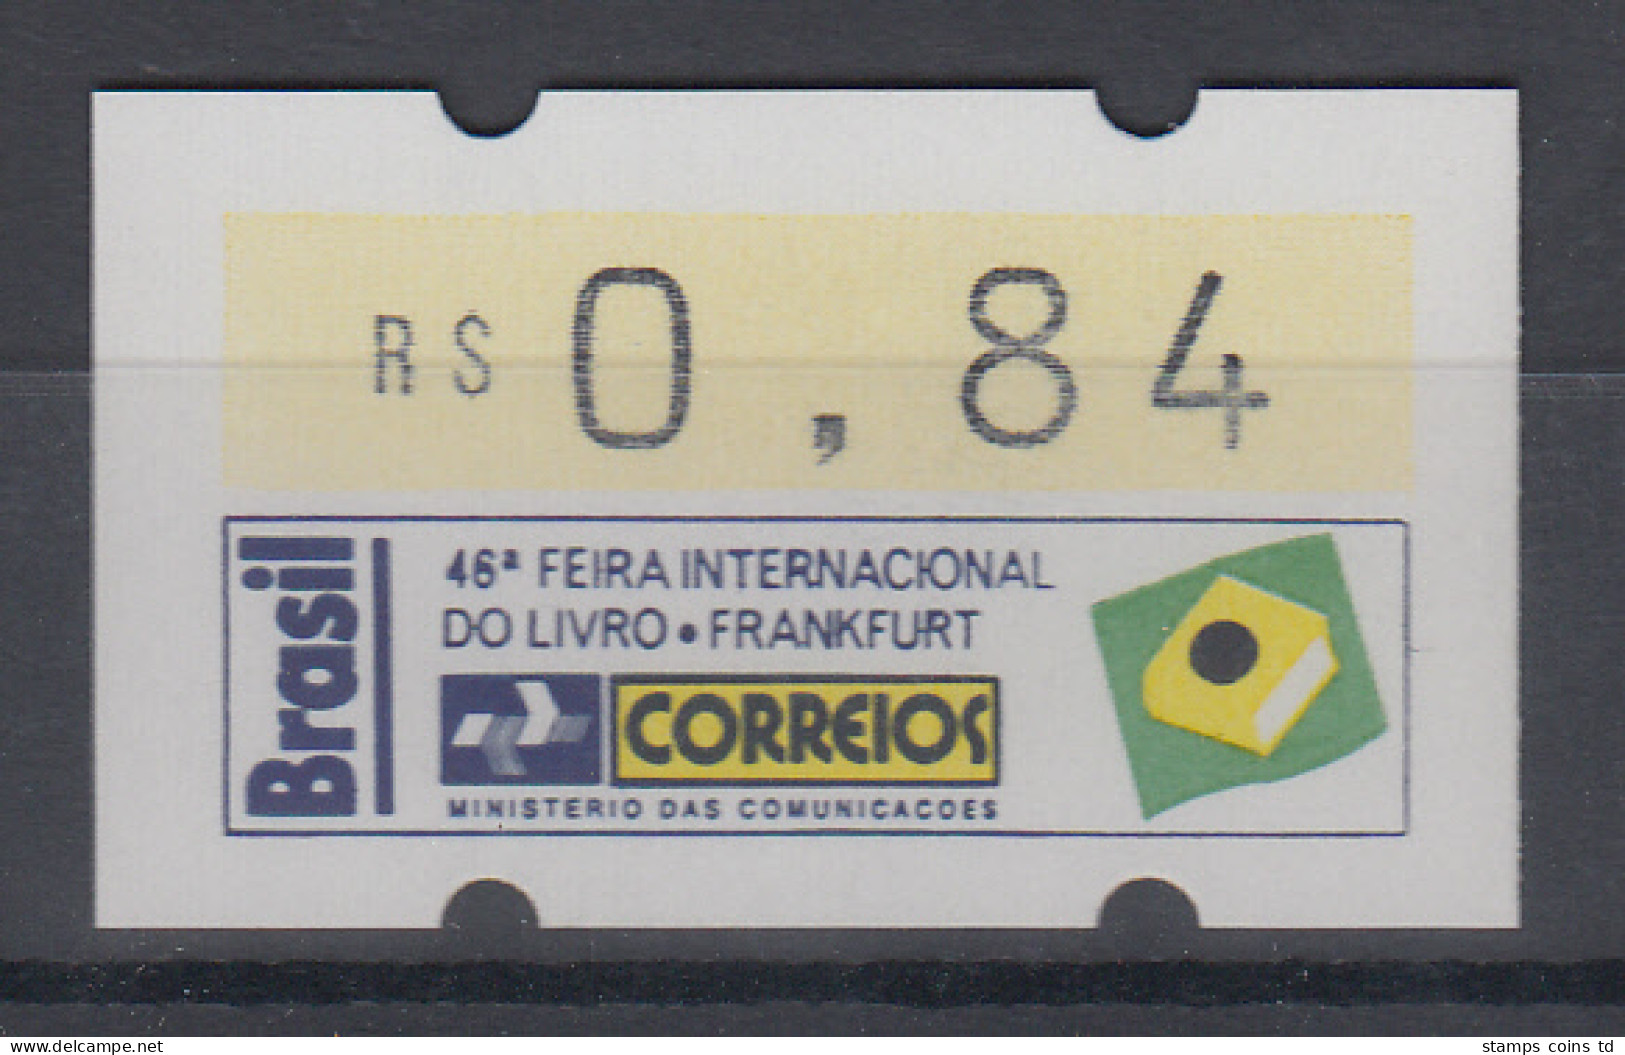 Brasilien Klüssendorf-ATM Sonderausgabe Buchmesse Frankfurt 1994 ** - Vignettes D'affranchissement (Frama)